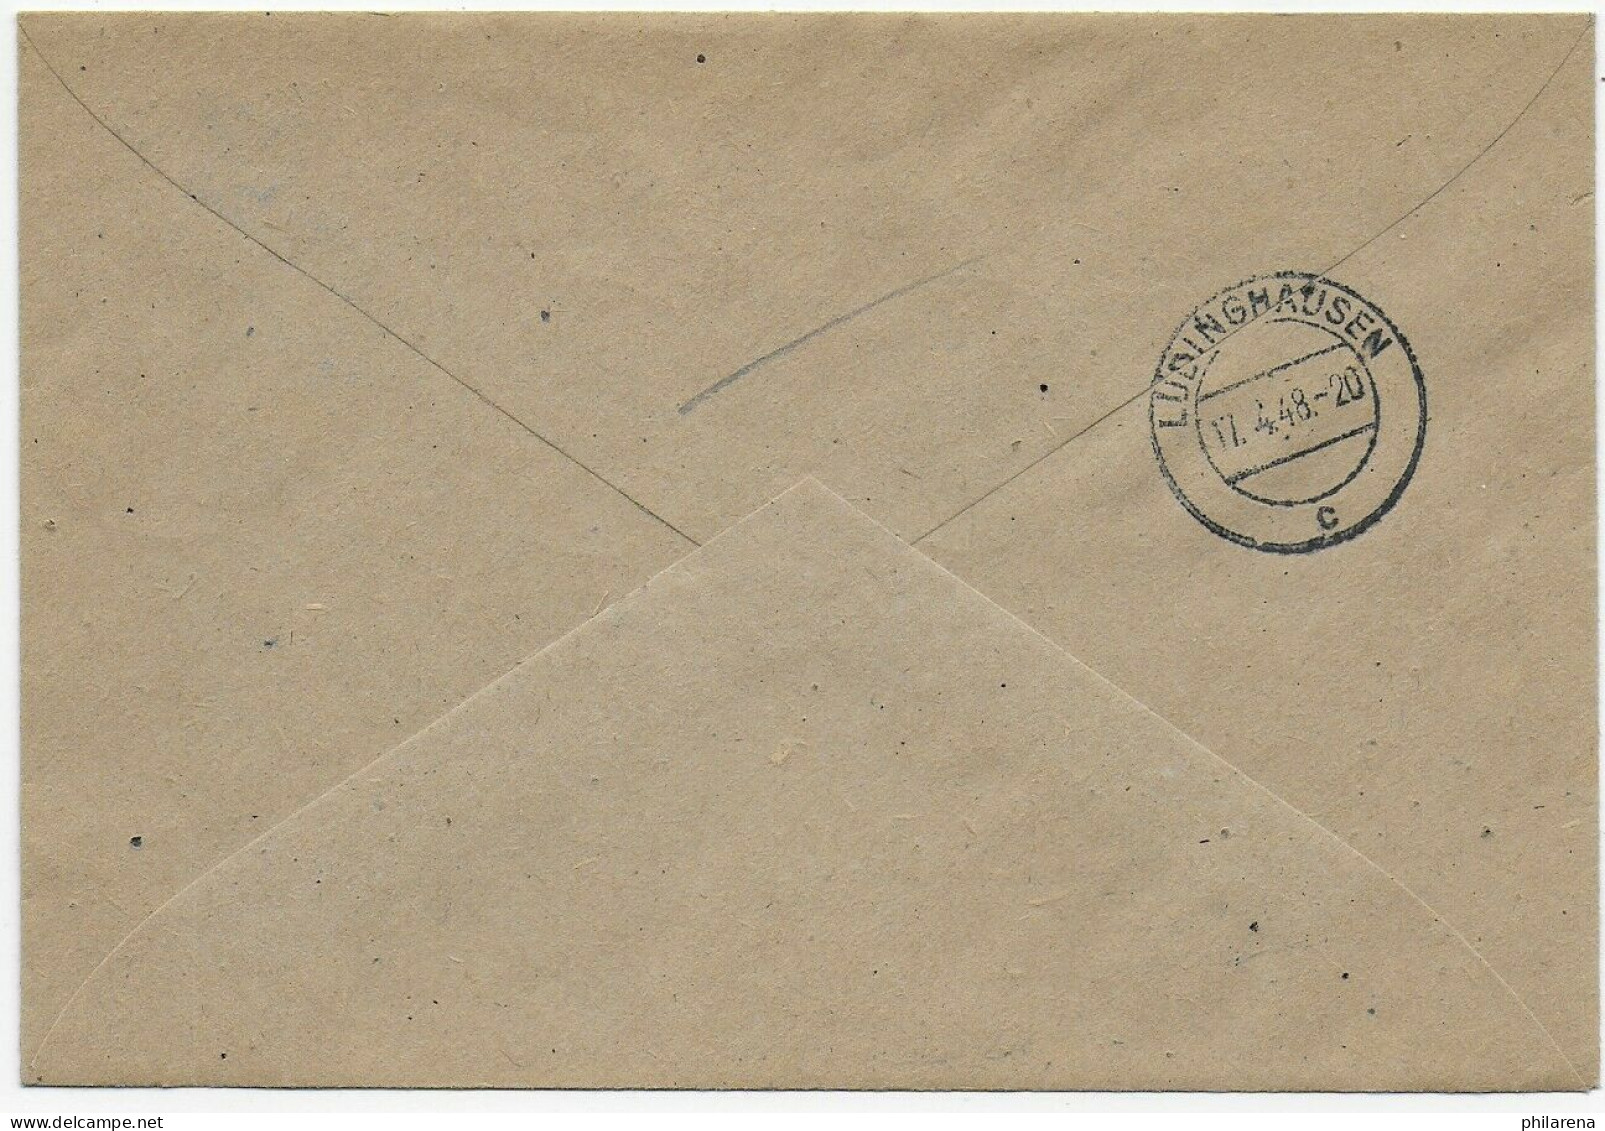 Einschreiben Seppenrade Nach Lüdinghausen, 1948 - Briefe U. Dokumente